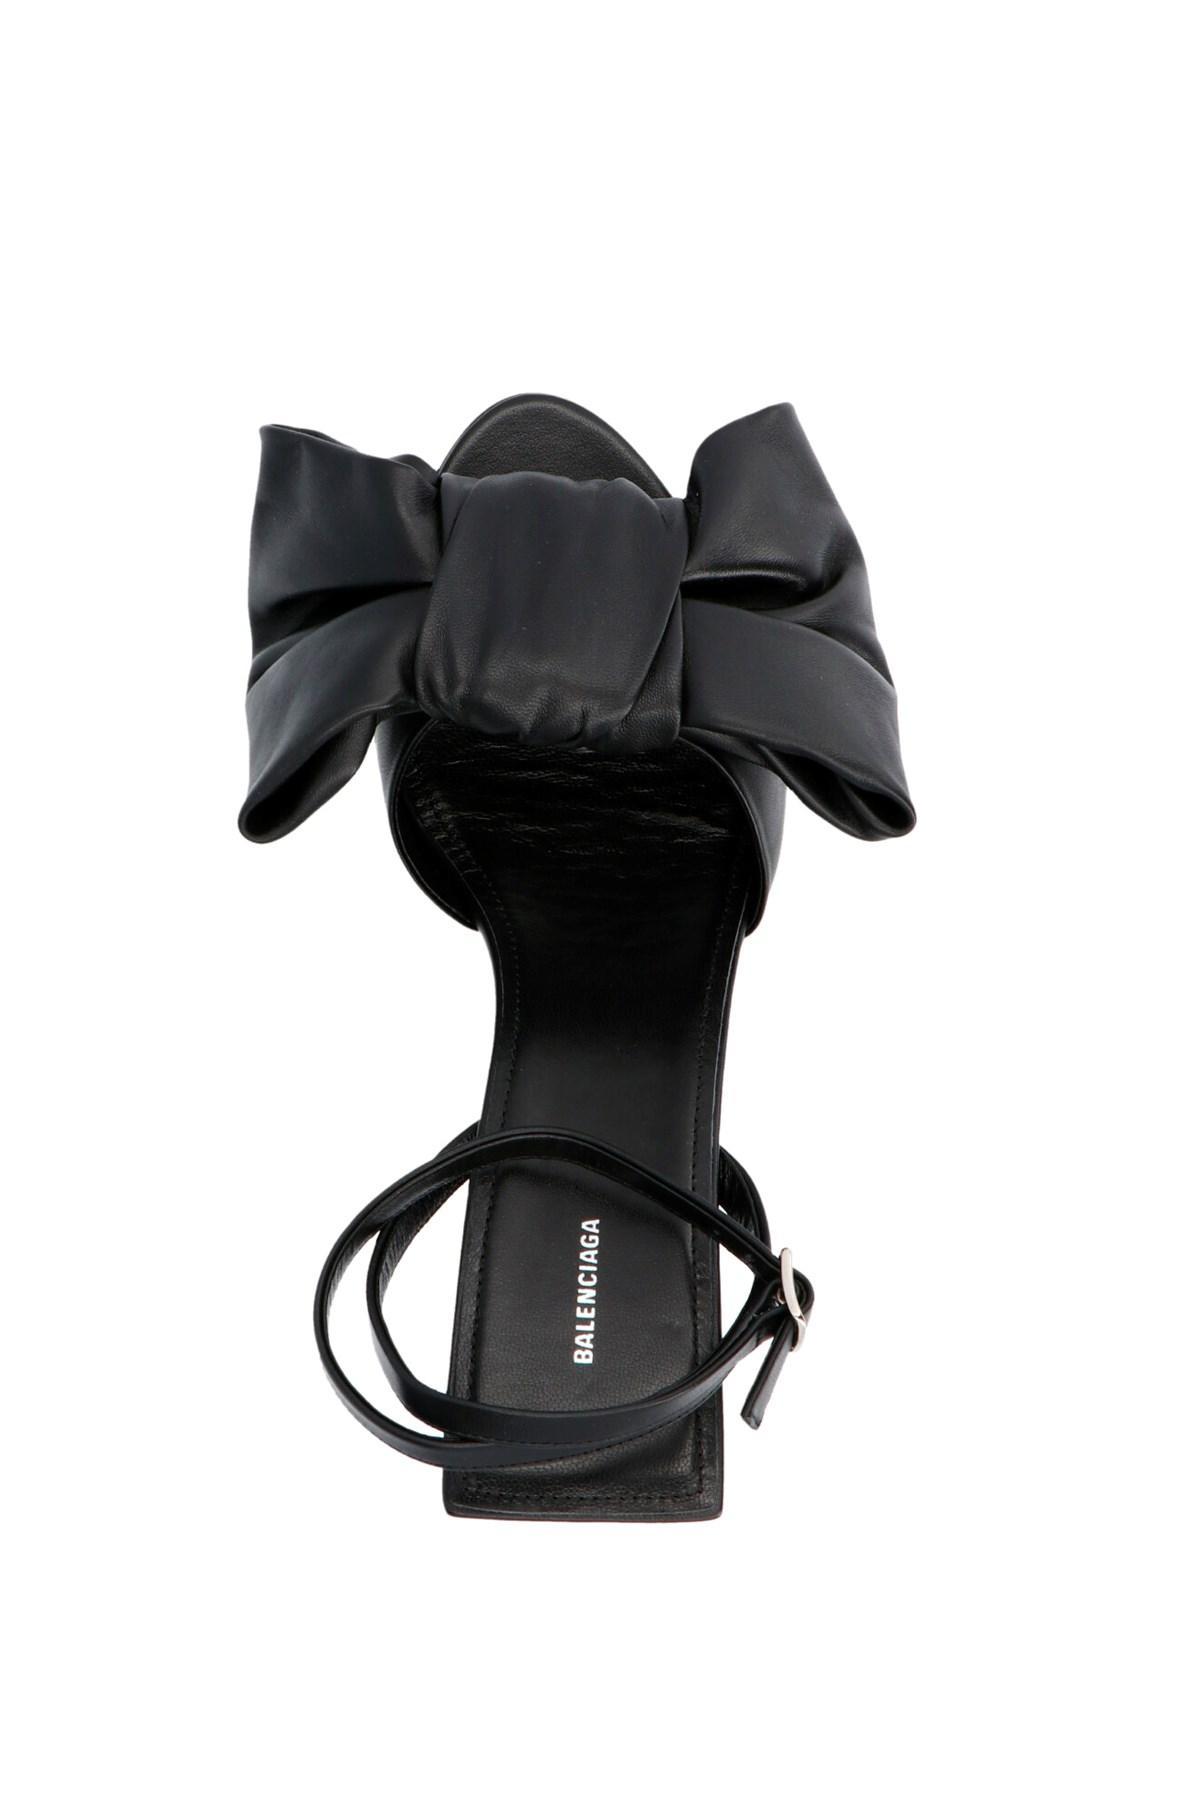 Balenciaga Bow Leather Sandal in Black - Lyst